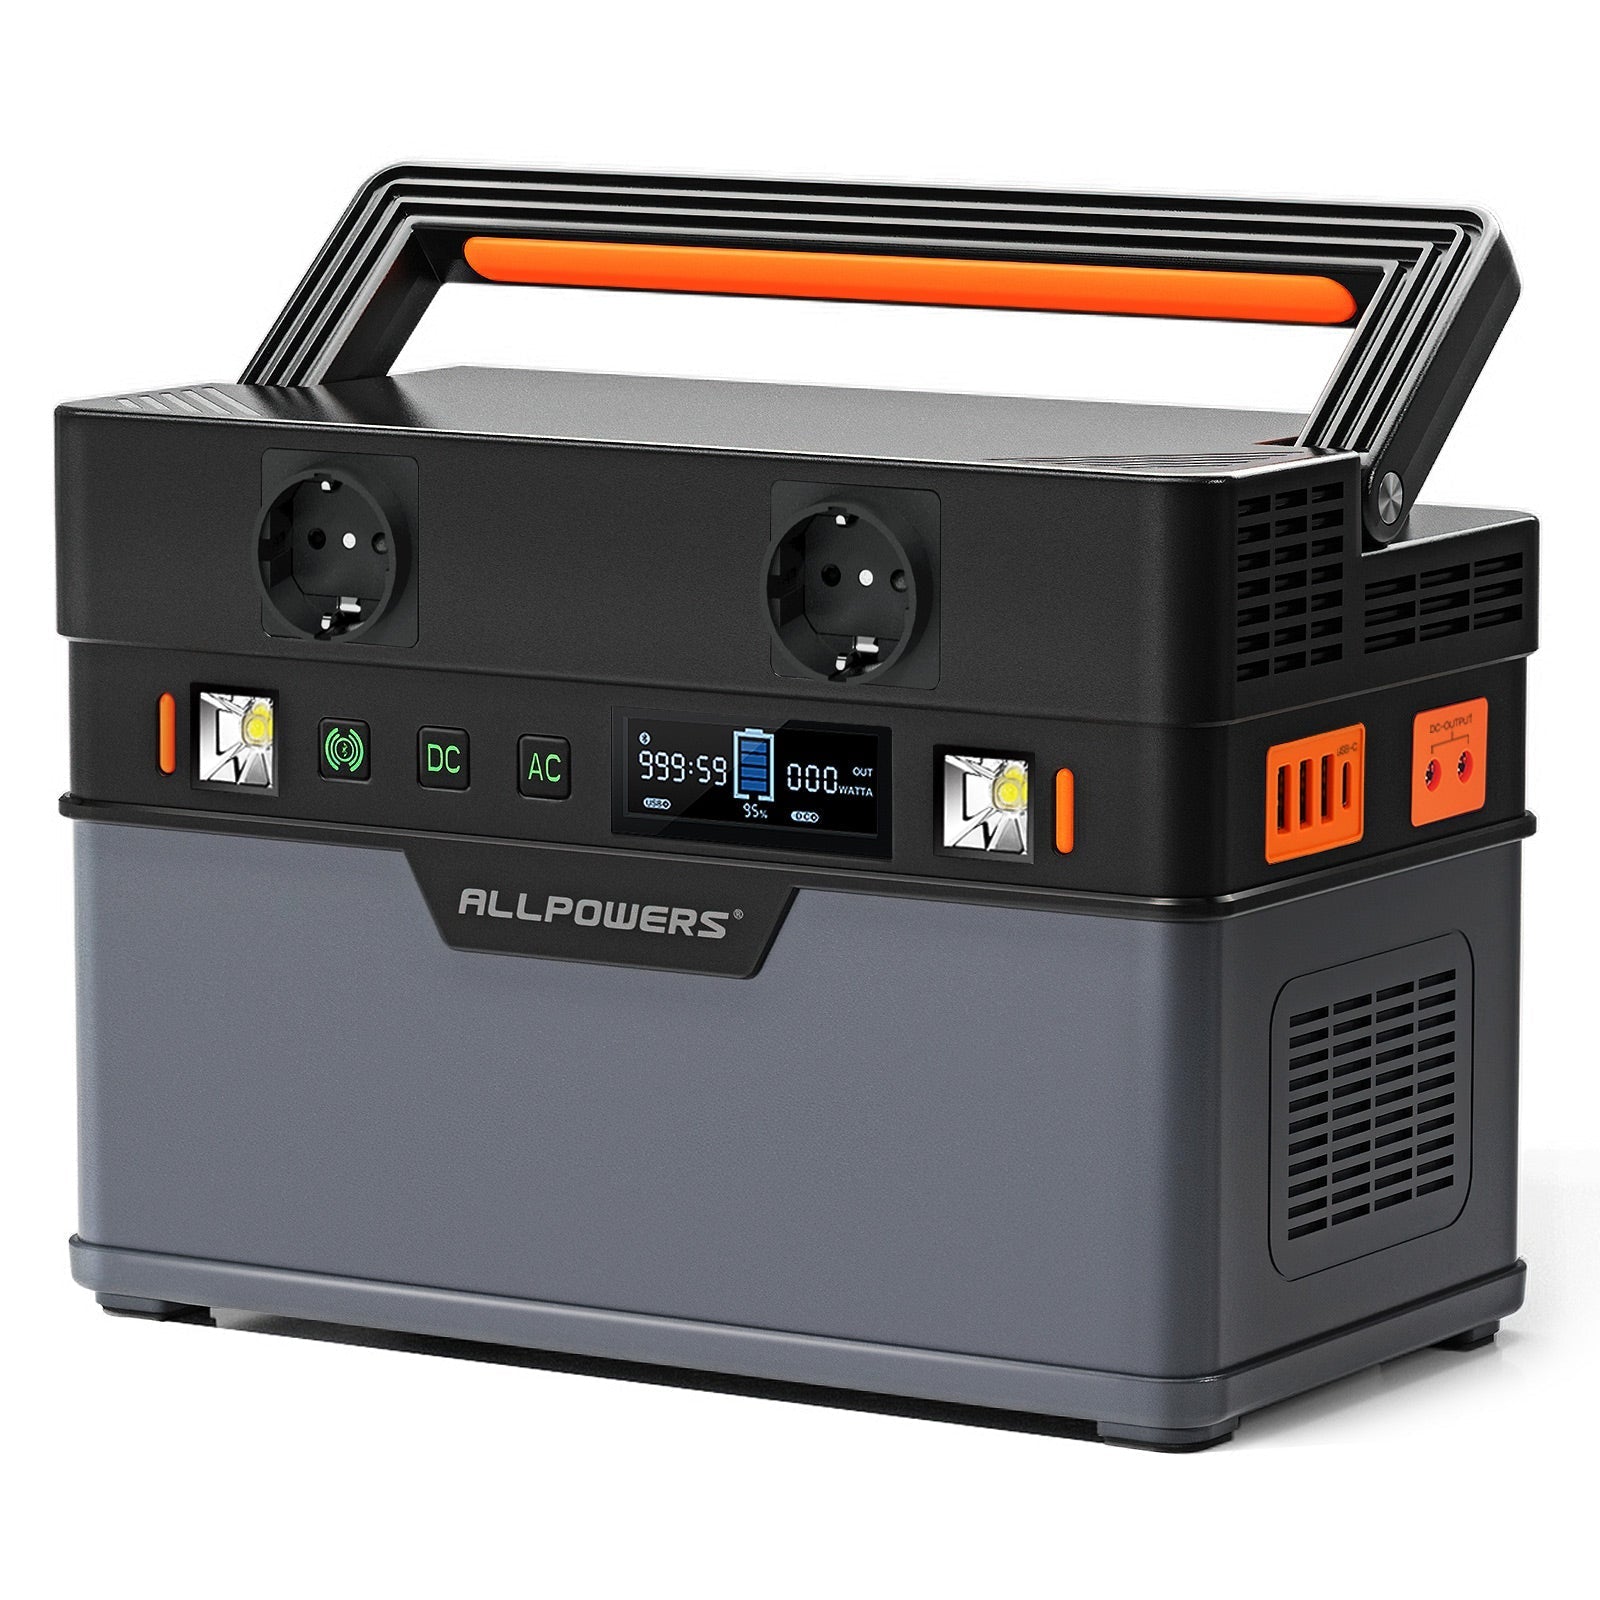 ALLPOWERS Kit Generatore Solare 700W (S700 + SP027 100W Pannello Solare)